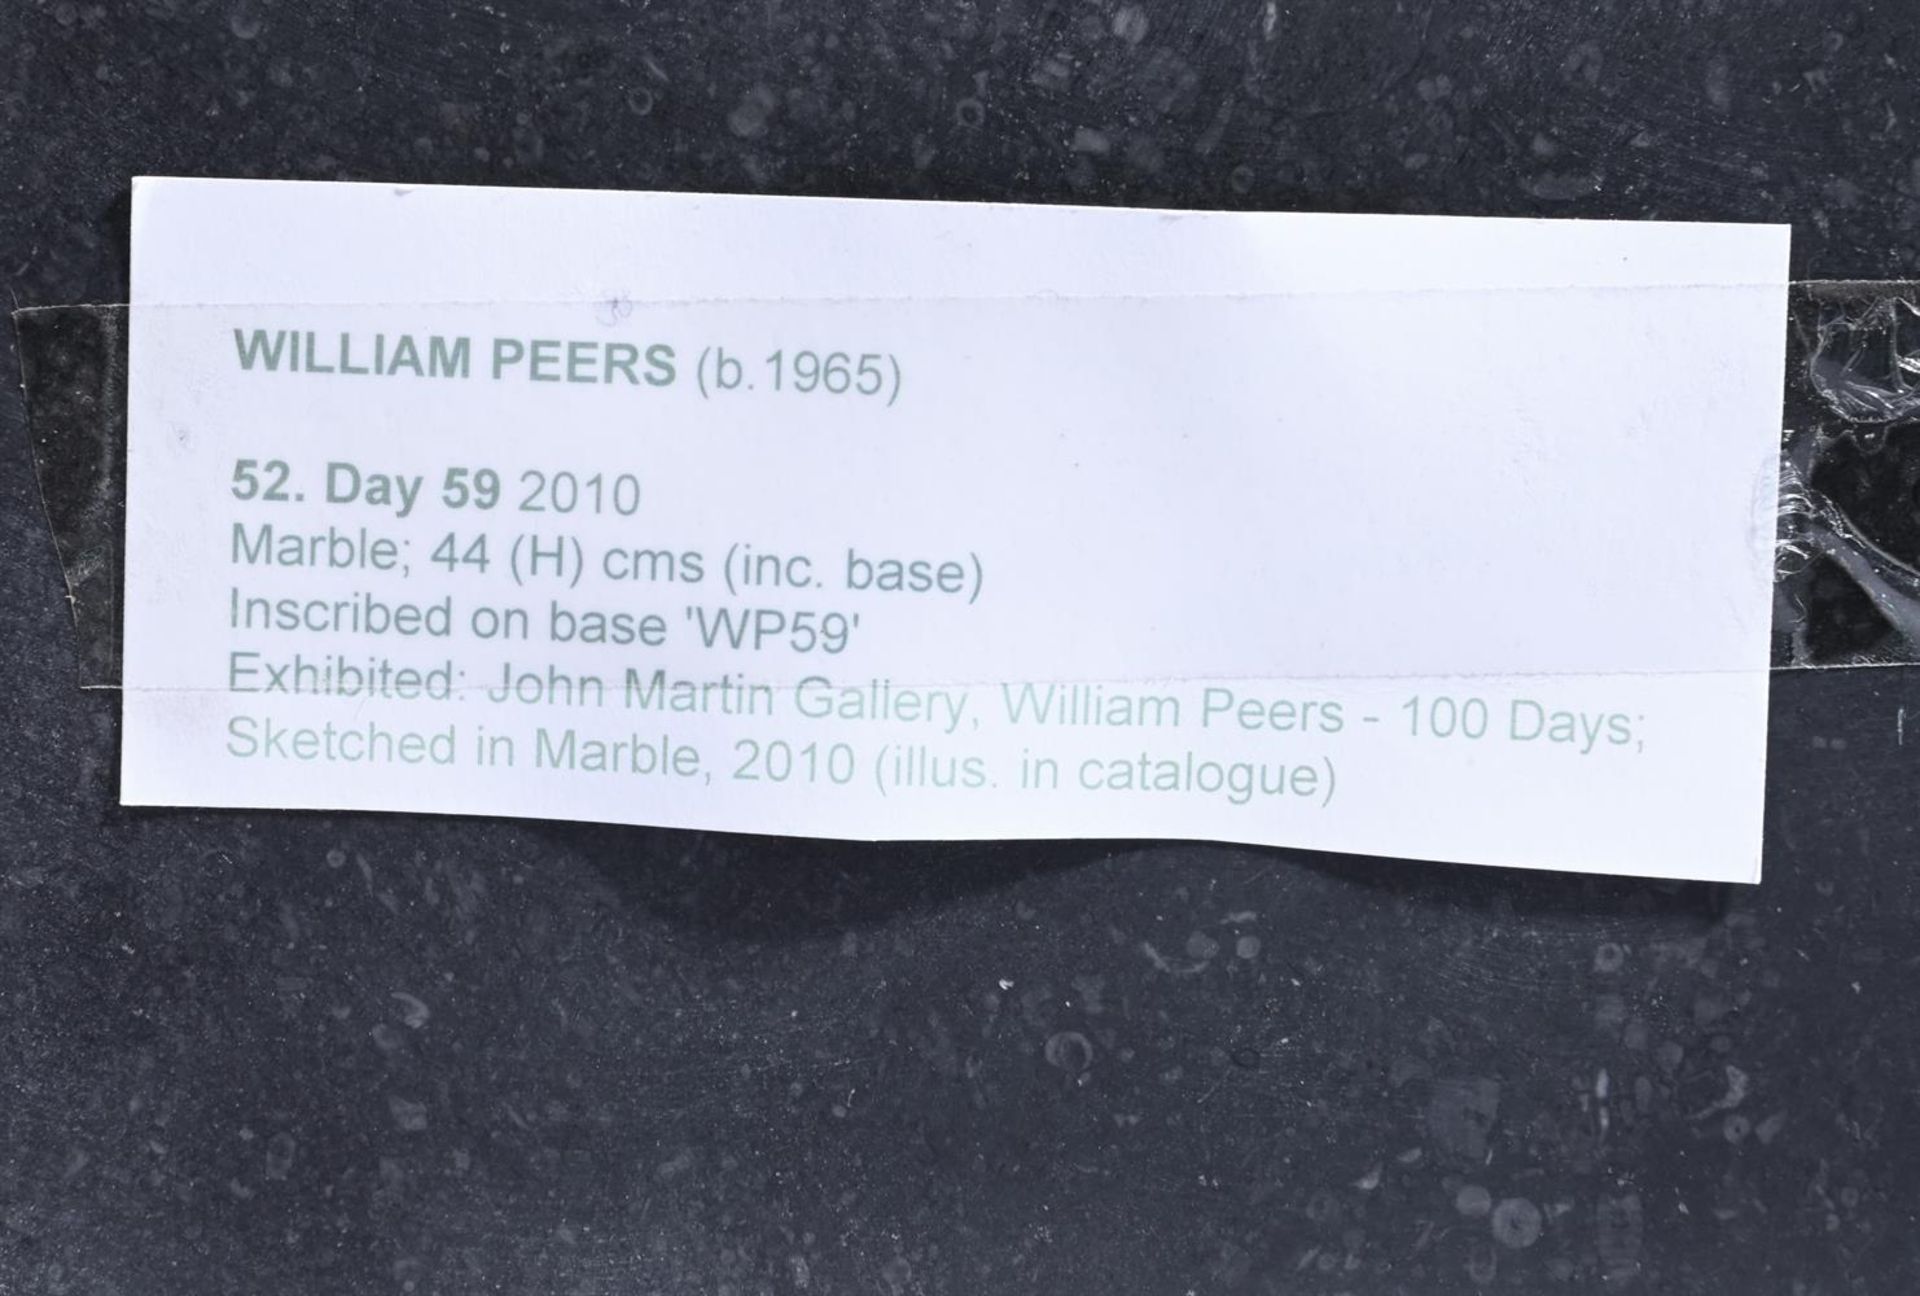 λ WILLIAM PEERS (BRITISH B. 1965), DAY 59 - Image 3 of 3